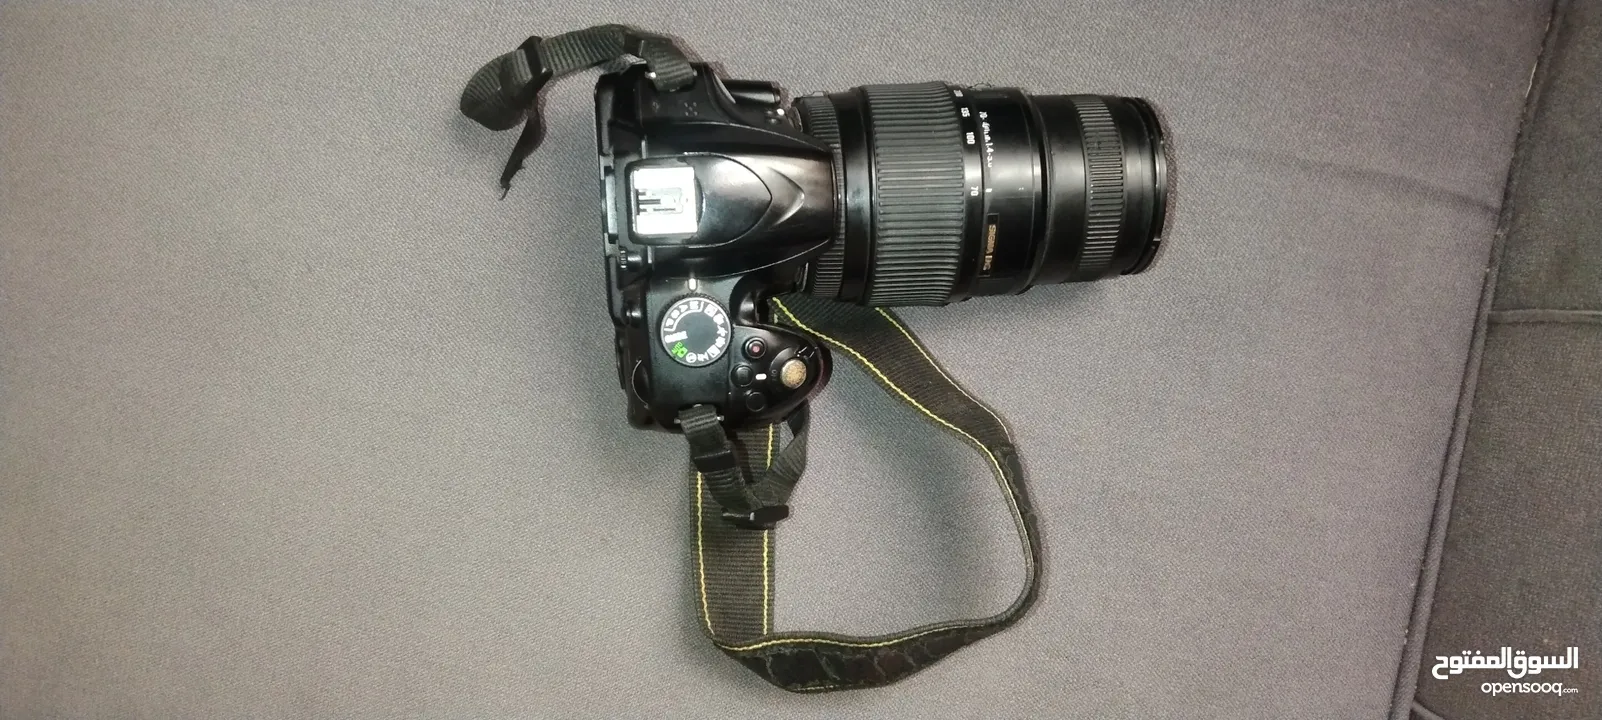 camera Nikon 3200d